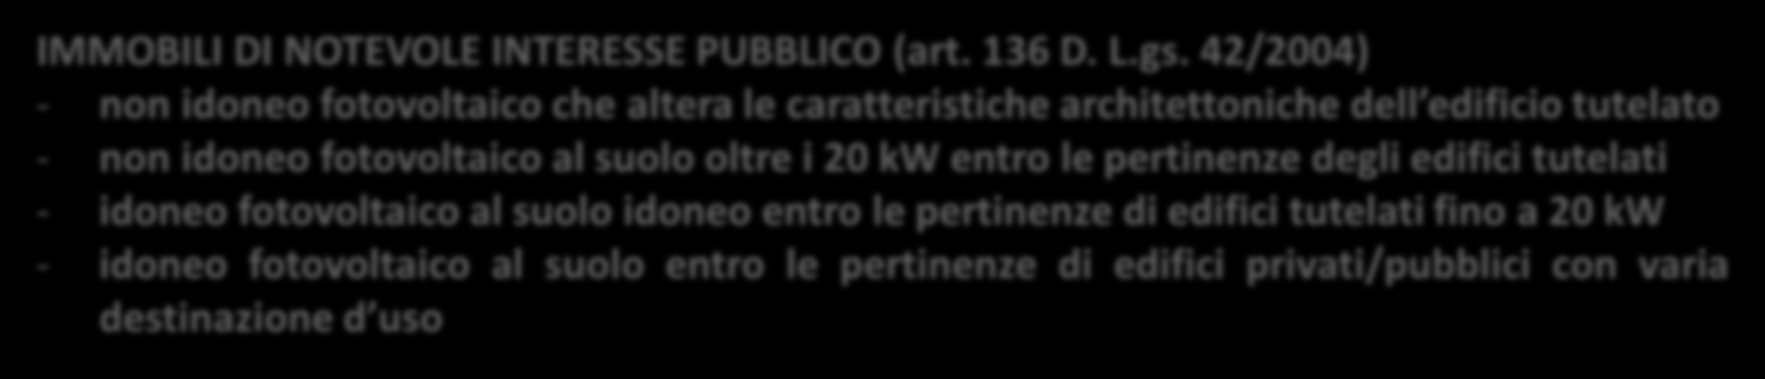 INTERESSE CULTURALE (Parte II D. Lgs. 42/2004) - non idoneo fotovoltaico su edifici riconosciuti da Ministero o Sovrintendenza (ad es.